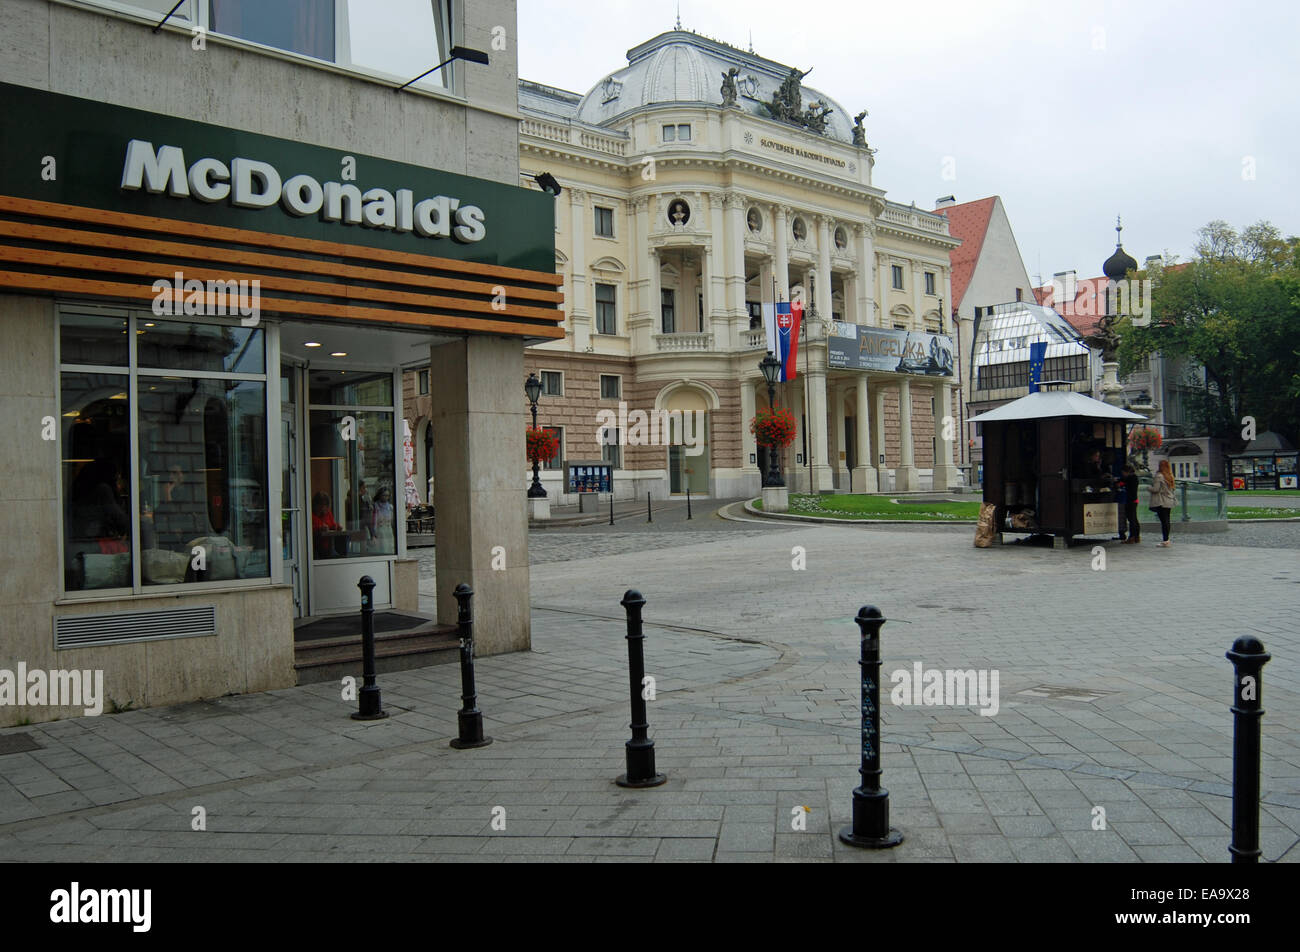 McDonald's restaurant in old town of Bratislava, next door to The Slovak National Theatre. Stock Photo